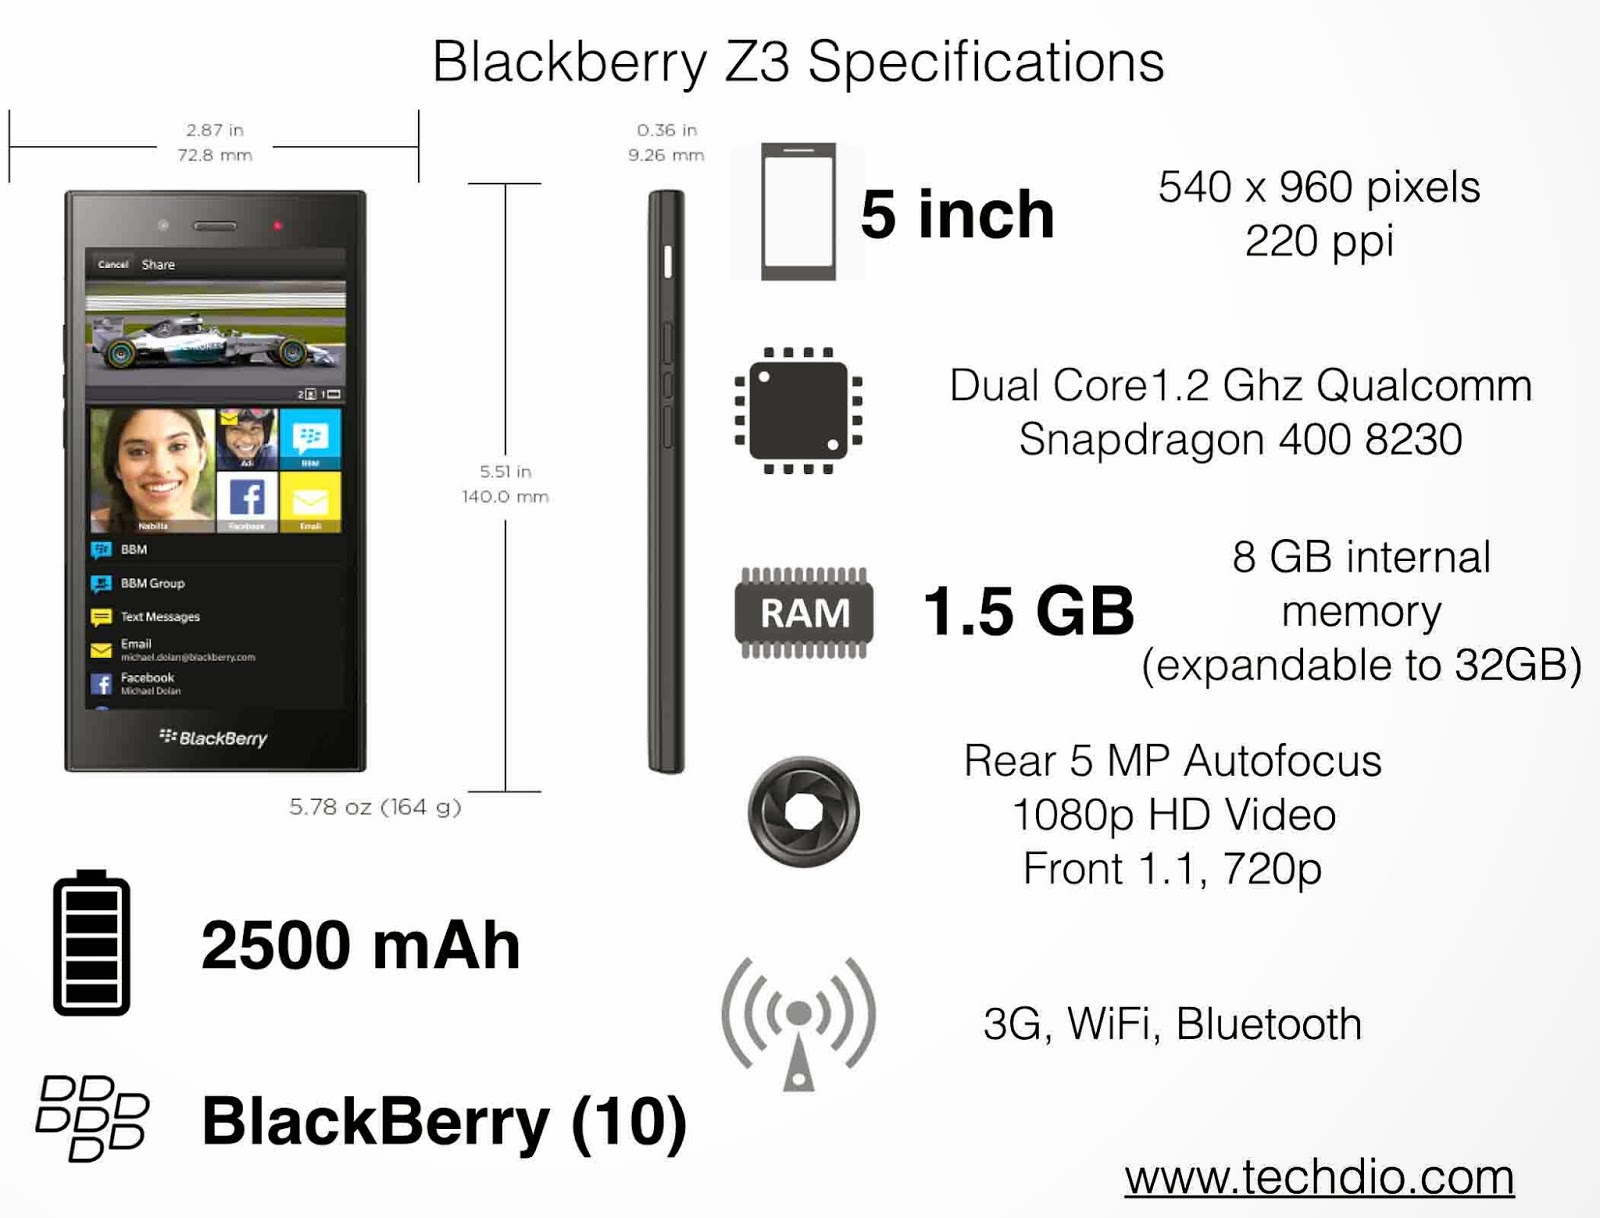 Blackberry Z3 www.techdio.com